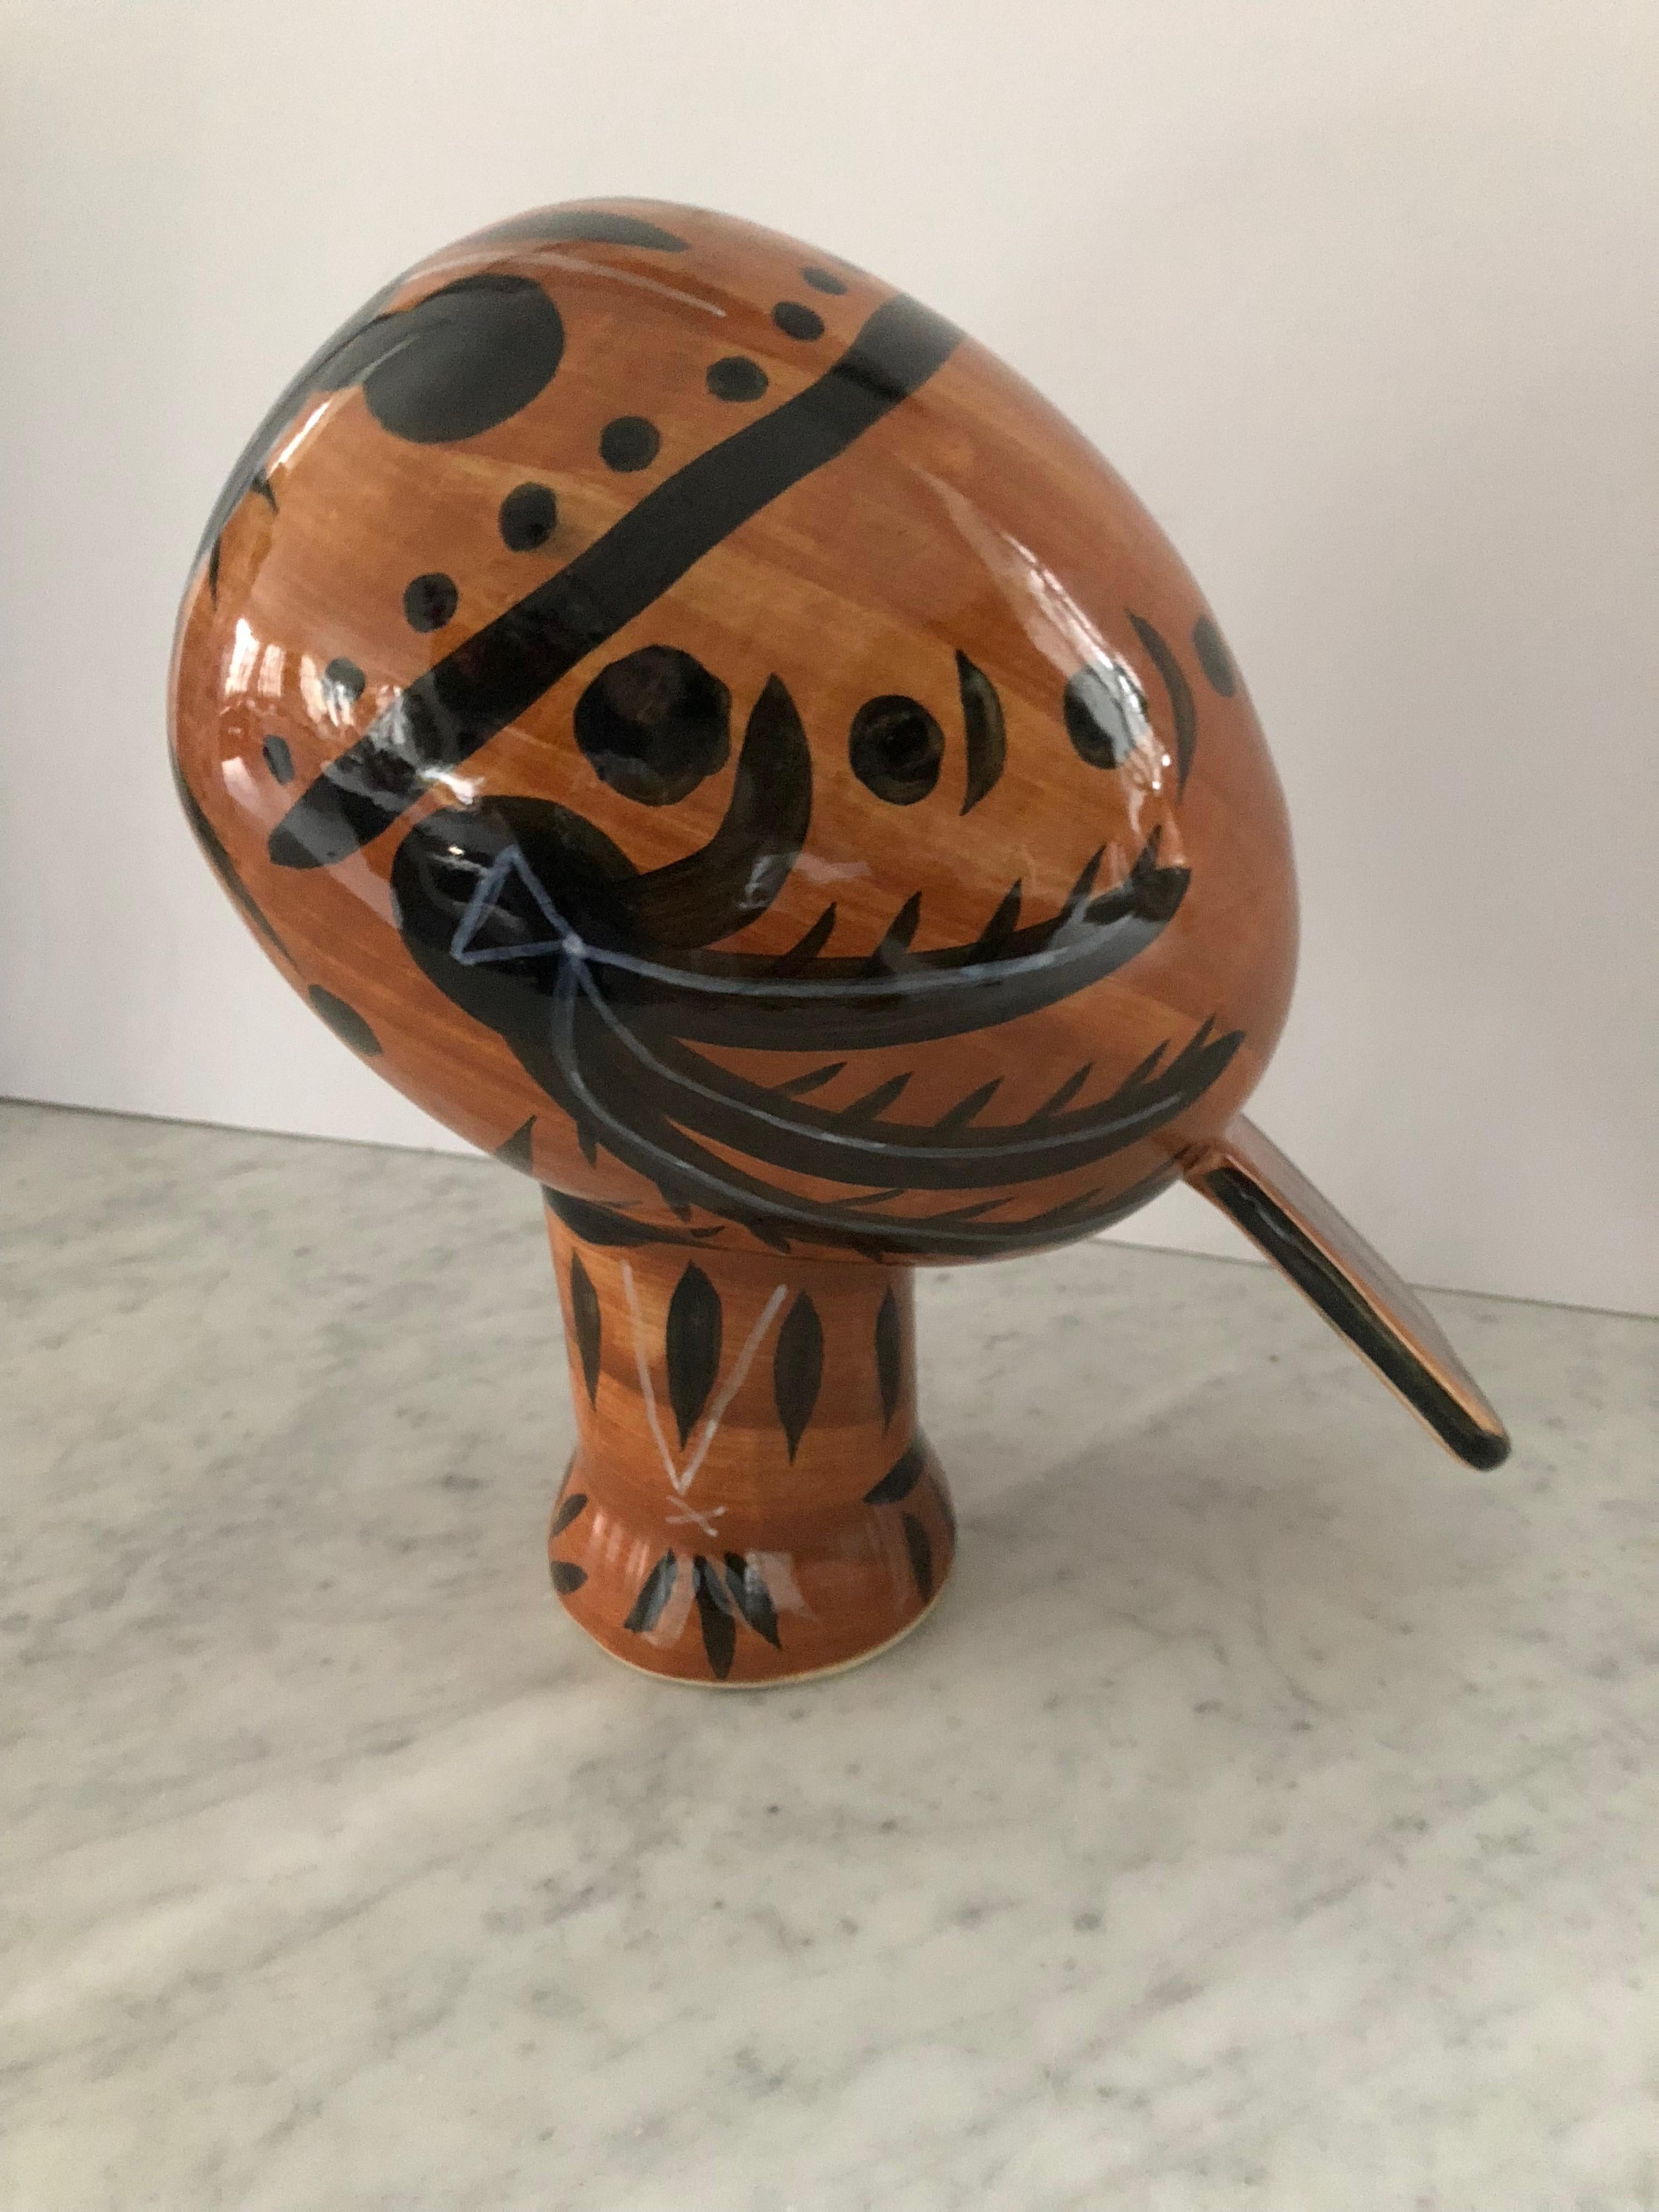 Padilla Pottery Limited Edition Skulptur inspiriert von Picasso (Töpferwaren)